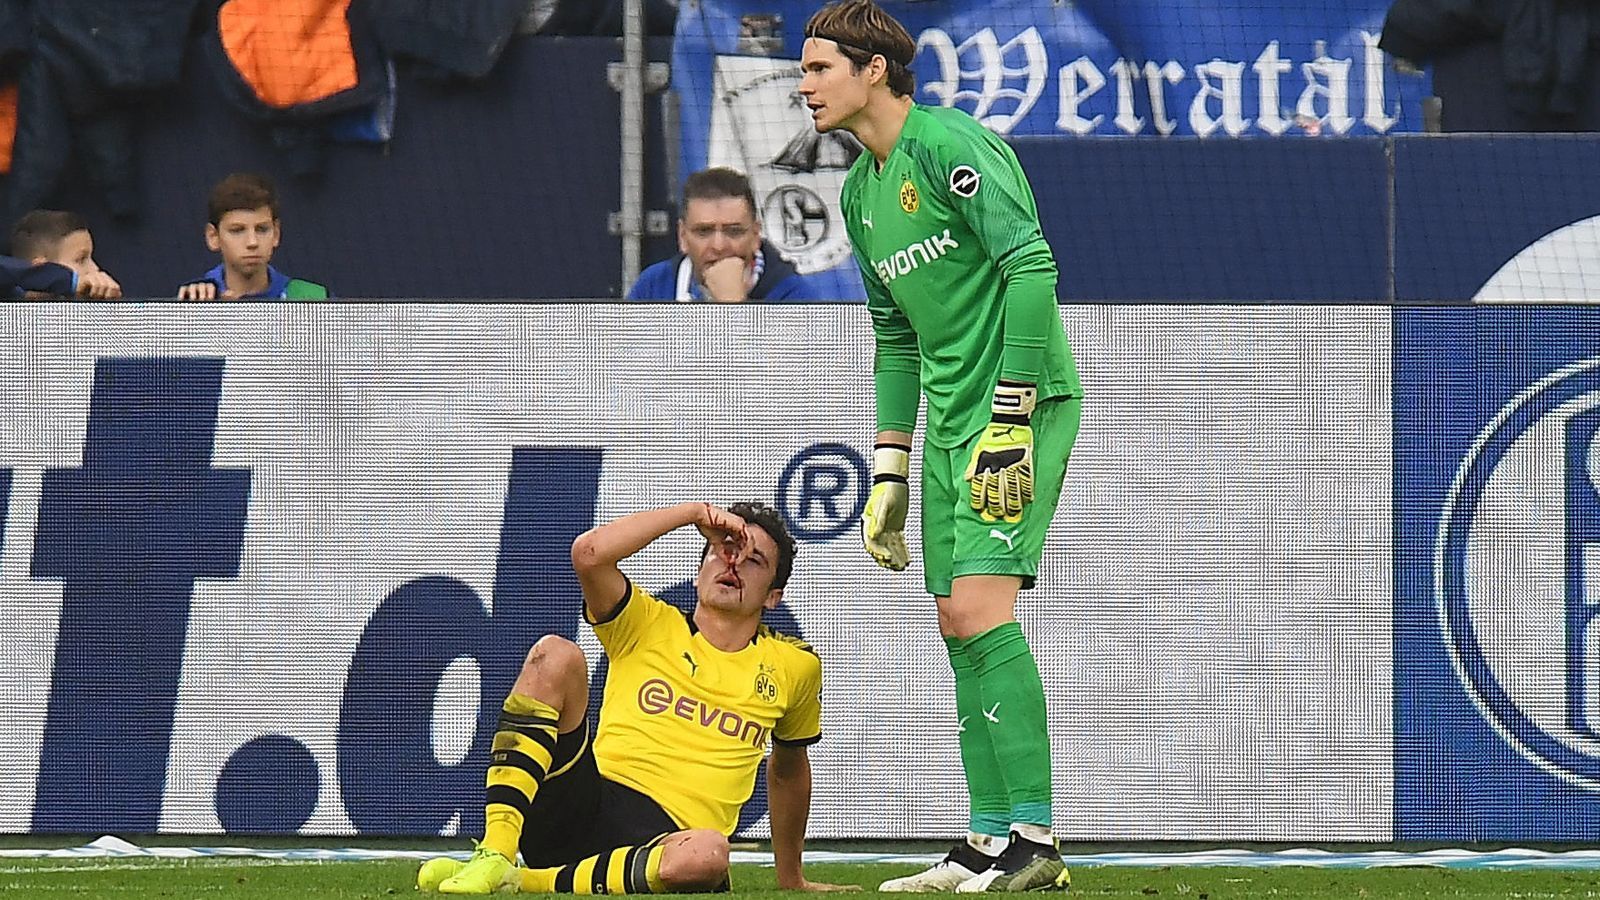 
                <strong>Bundesliga: Impressionen vom Revierderby 2019/20</strong><br>
                Am Ende holte sich Borussia Dortmund im Derby zwar keine sprichwörtliche blutige Nase in Form einer Niederlage, doch Thomas Delaney (u.) musste den einen Punkt doch mit einer blutenden Nase teuer bezahlen. Endstand im Revierduell: 0:0.
              